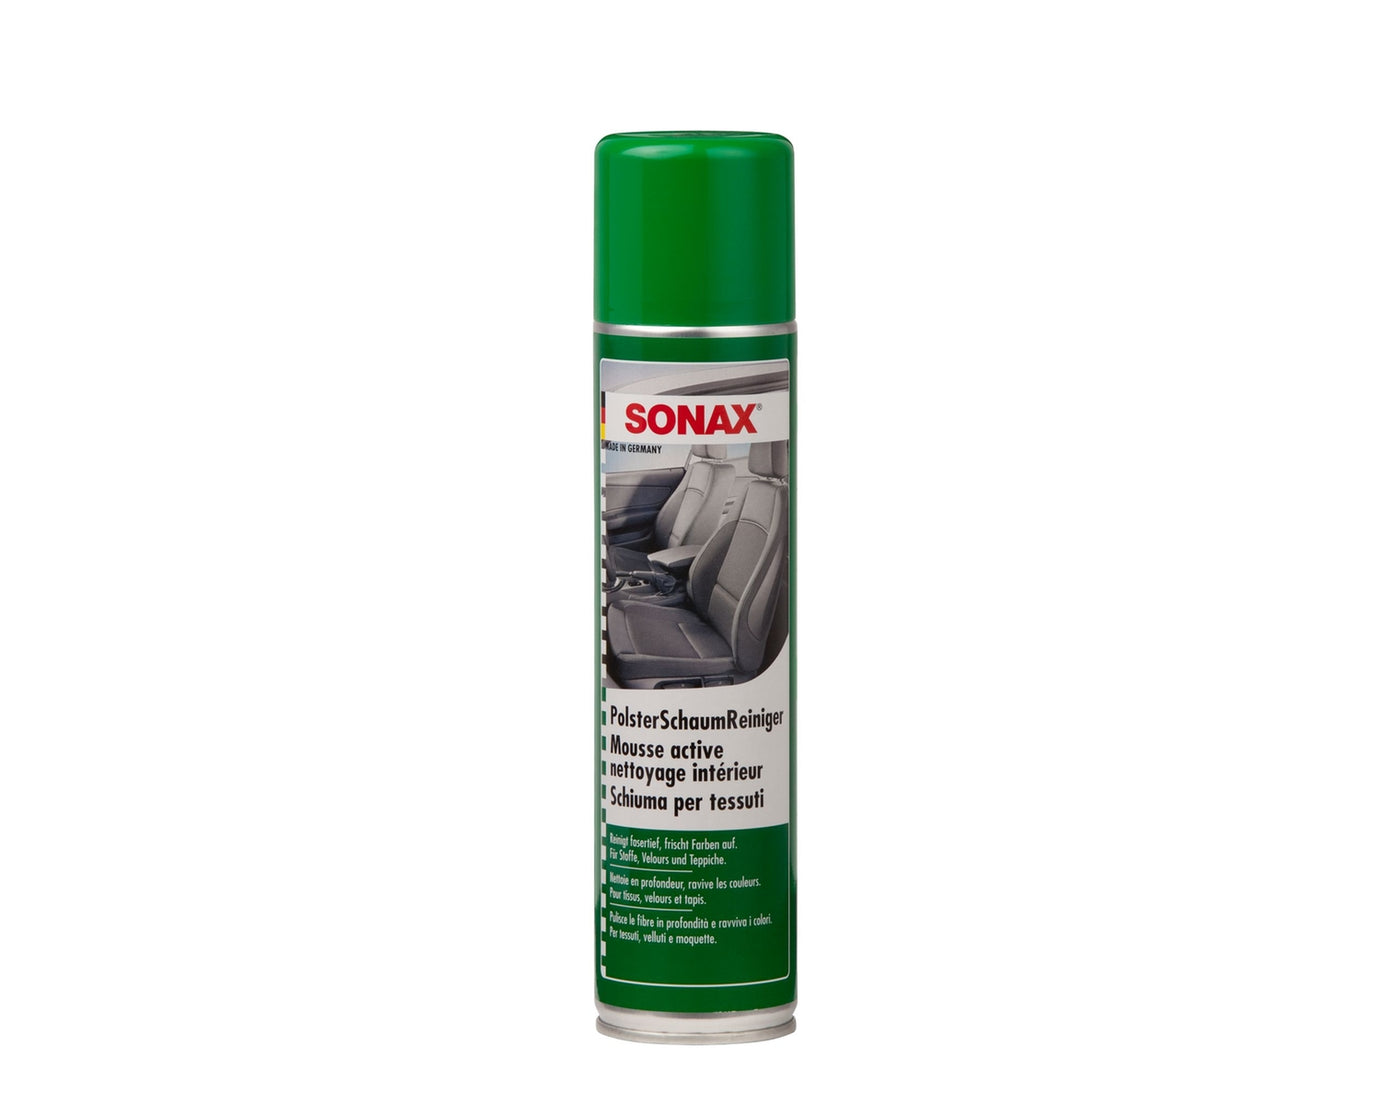 SONAX - Polster-Schaumreiniger, Spray à 400 ml - Garage/Velos-Motos Allemann